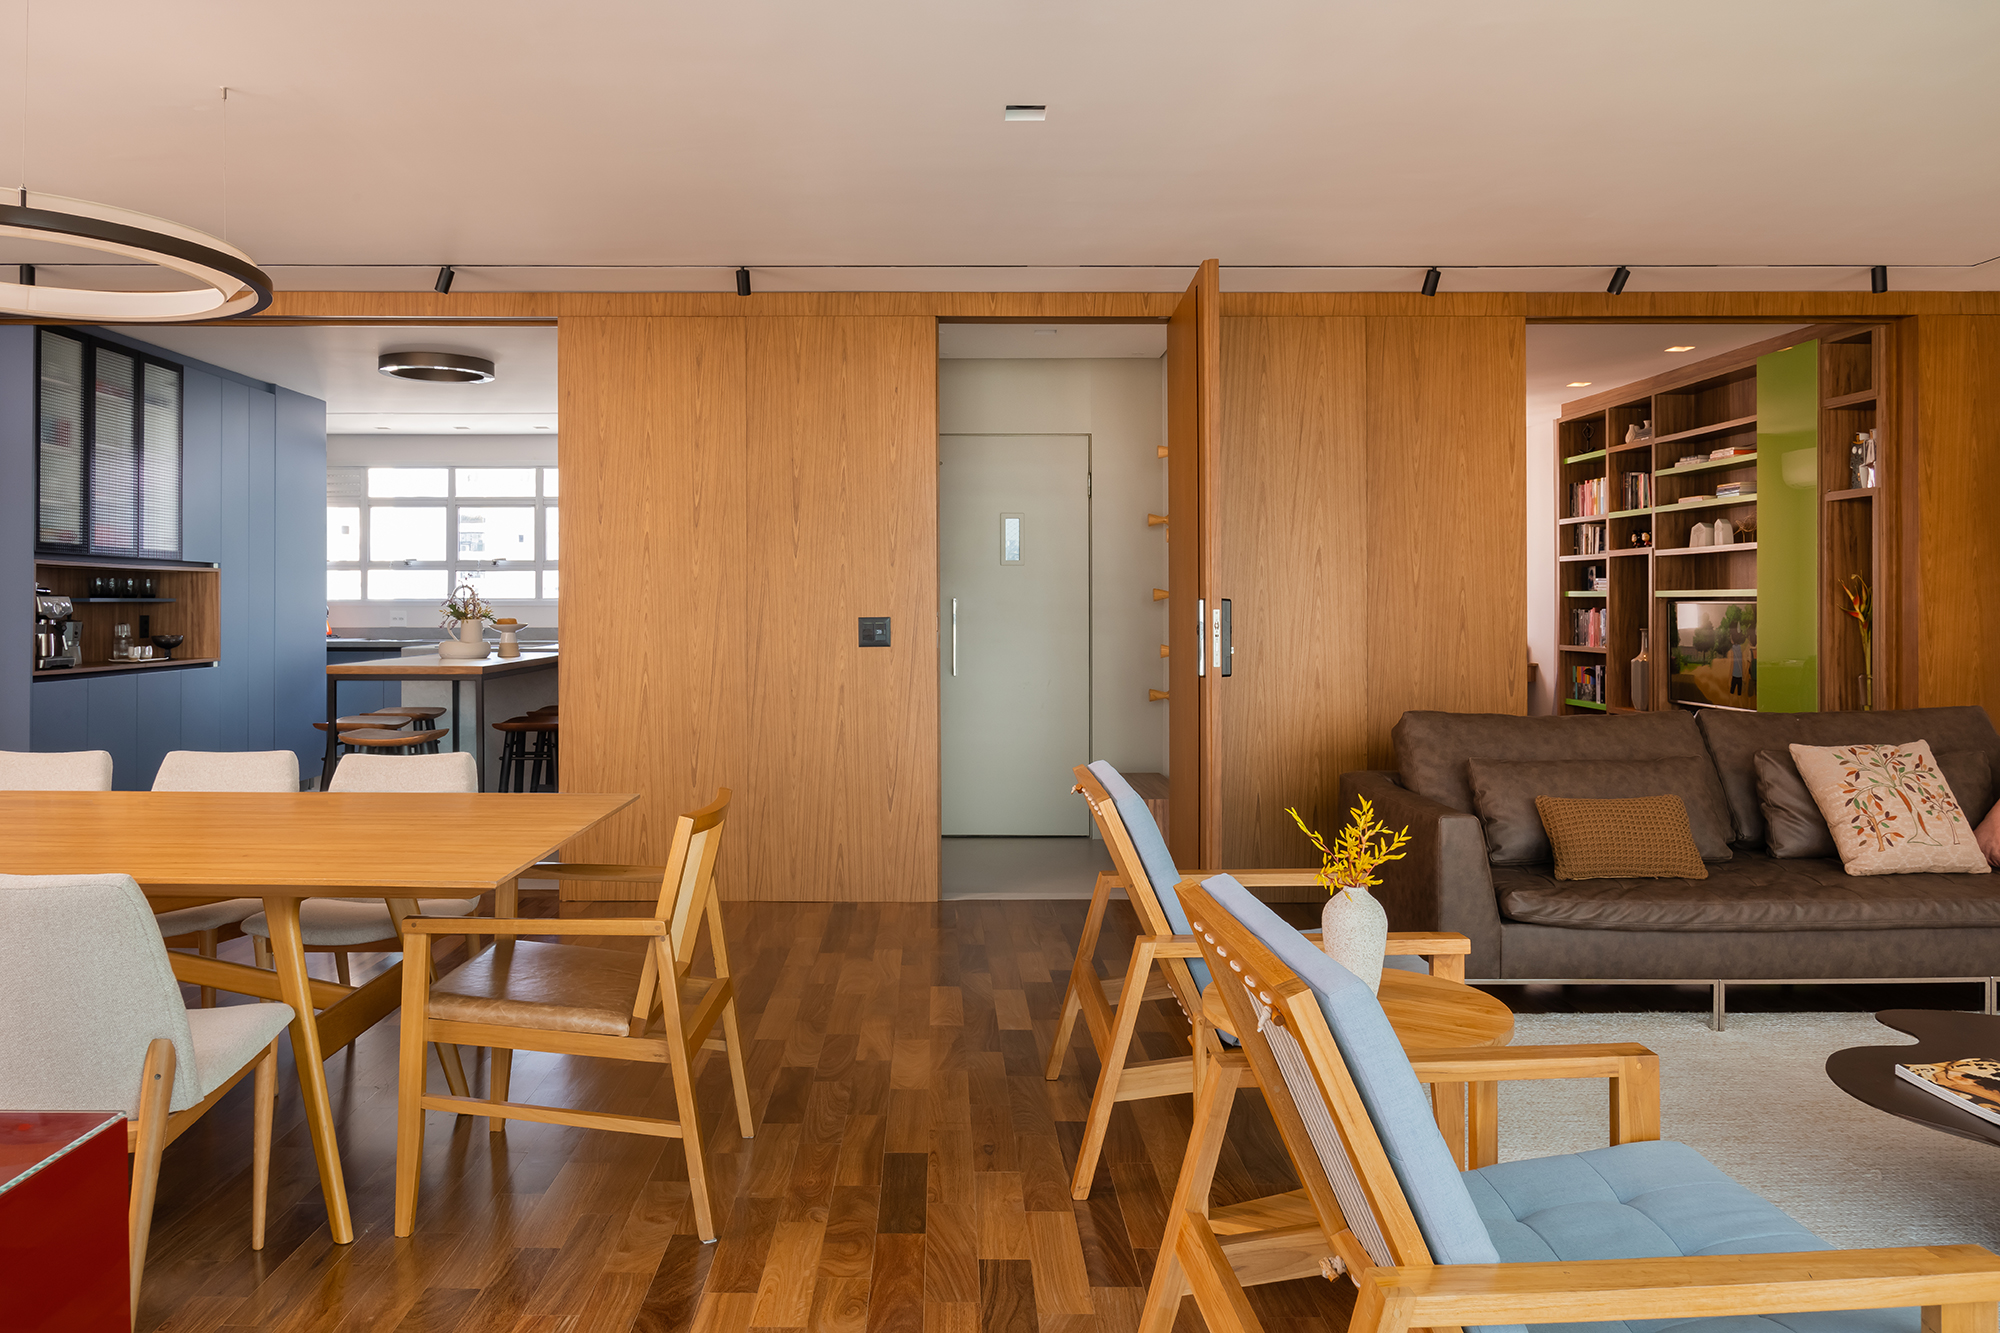 Apartamento de 188 m² ganha dois cooktops na cozinha e balanços na sala, Projeto Raízes Arquitetos. Na foto, salas de estar e jantar integradas com a cozinha. Painéis de madeira na parede,